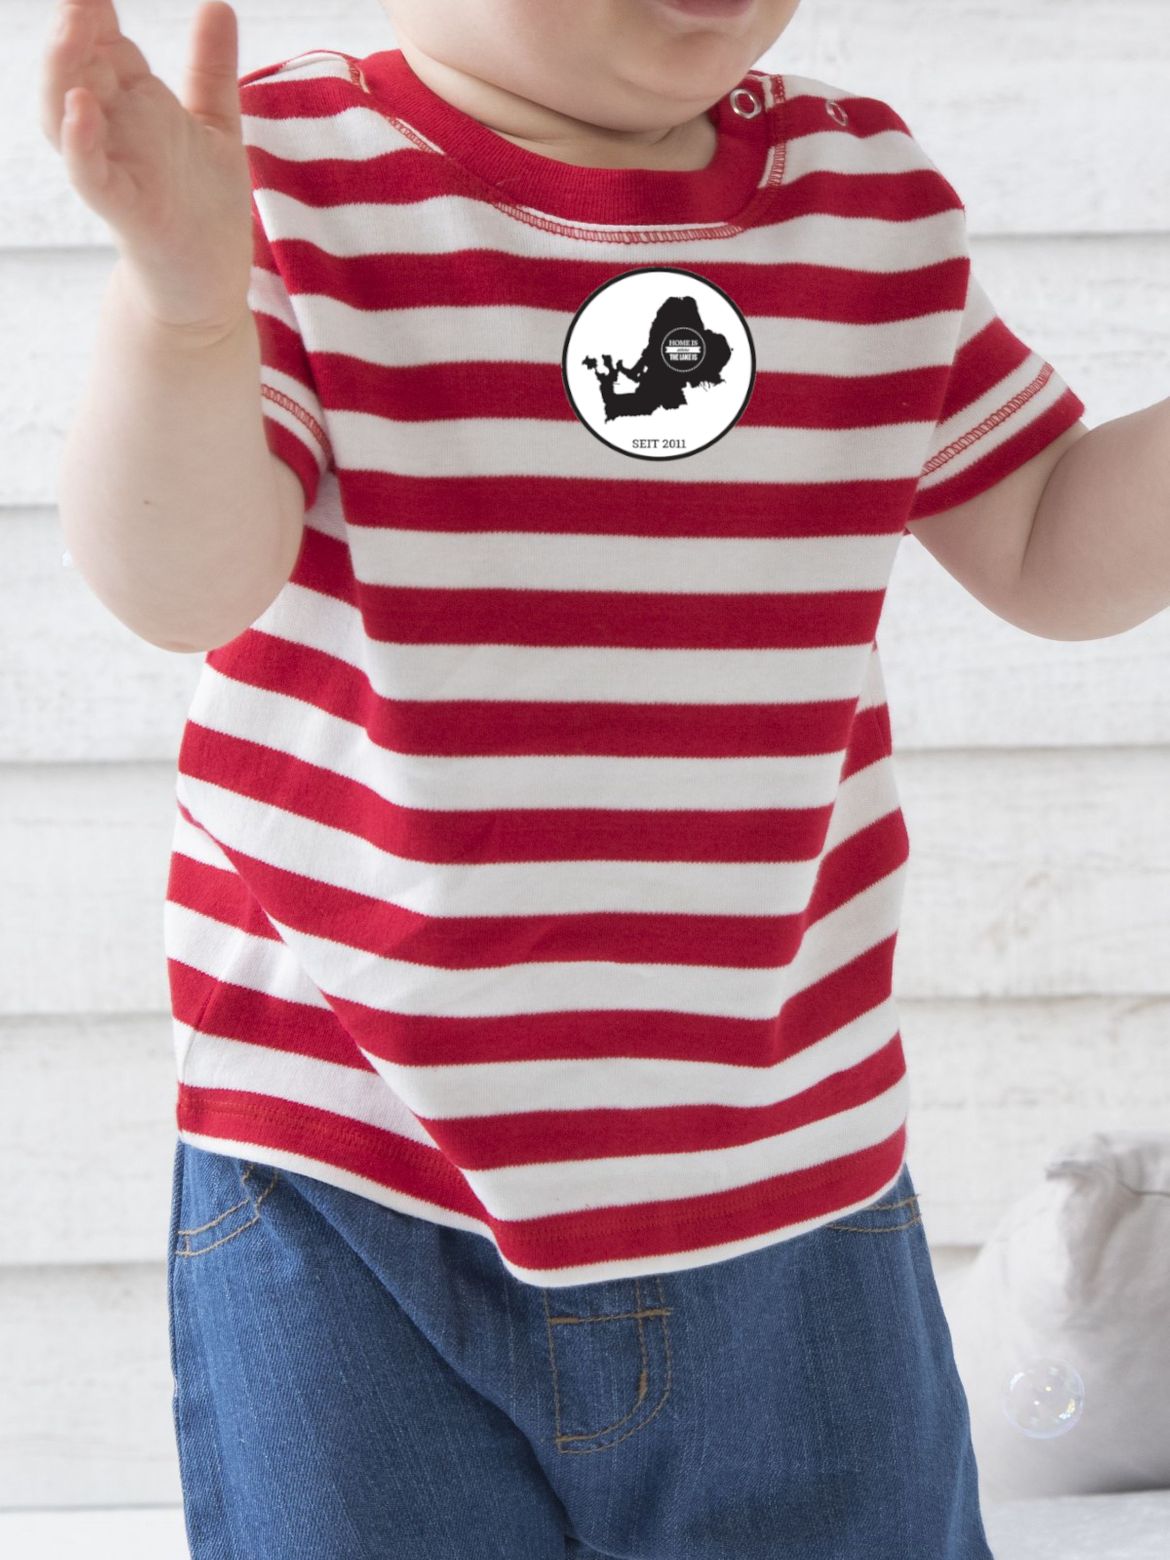 Chiemsee Motiv Baby T-Shirt rot weiß gestreift